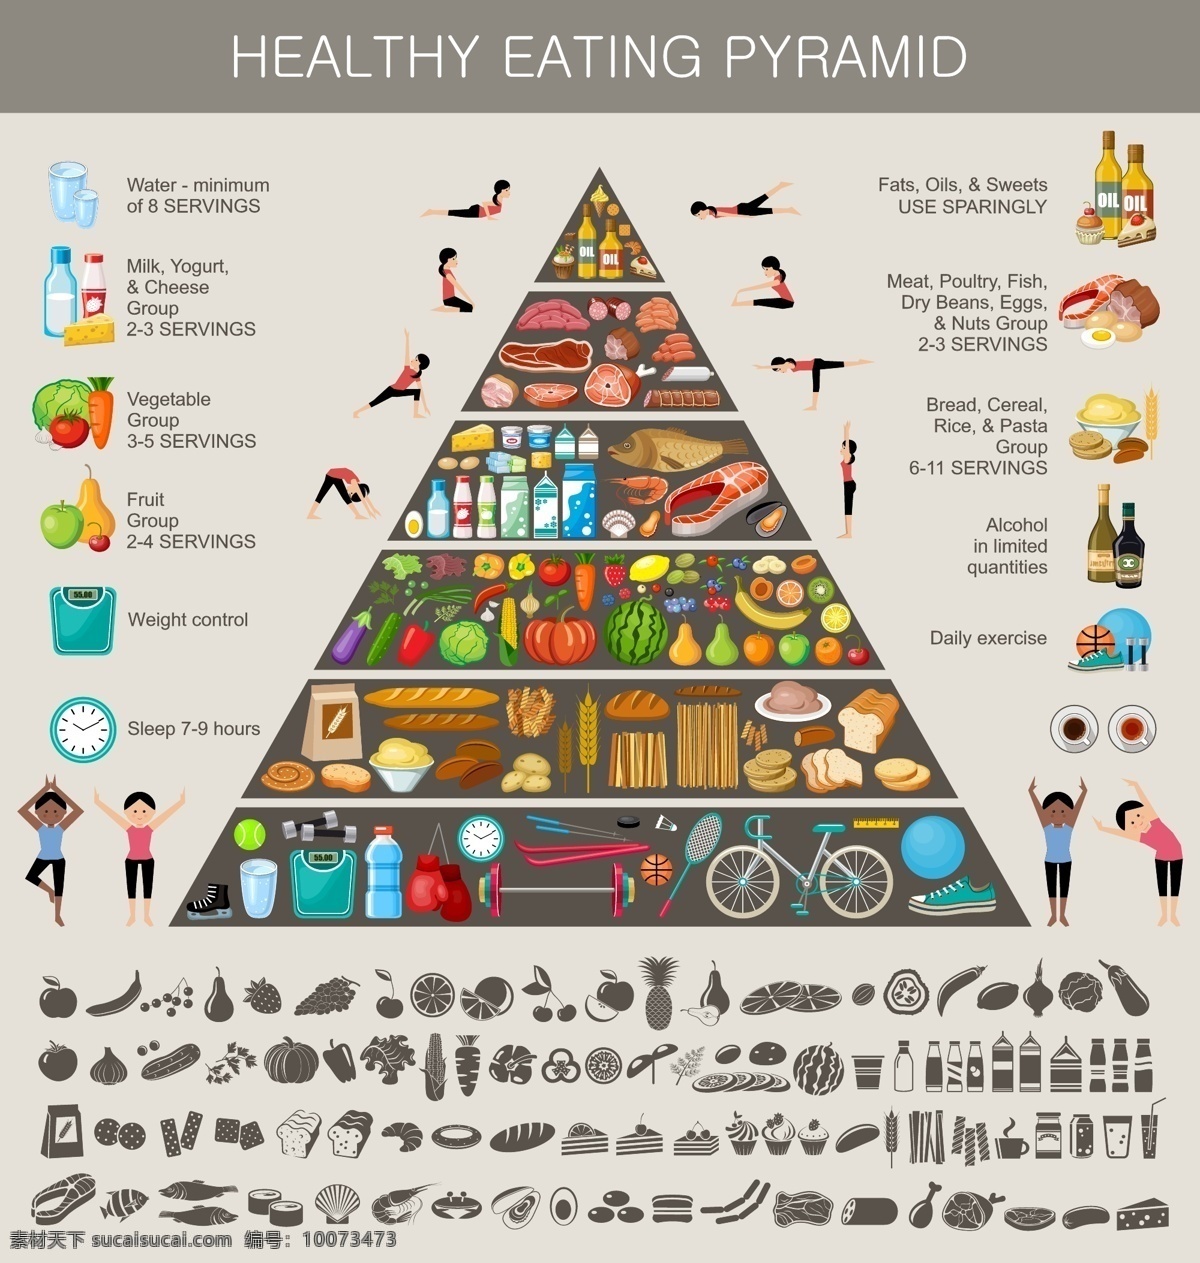 精美 健康饮食 金字塔 矢量 健康生活 食物图标 运动健身 生活人物 食物 西瓜面包 粥 胡萝卜 玉米 香蕉 牛奶 奶酪 苹果梨 葡萄 草莓 灰色